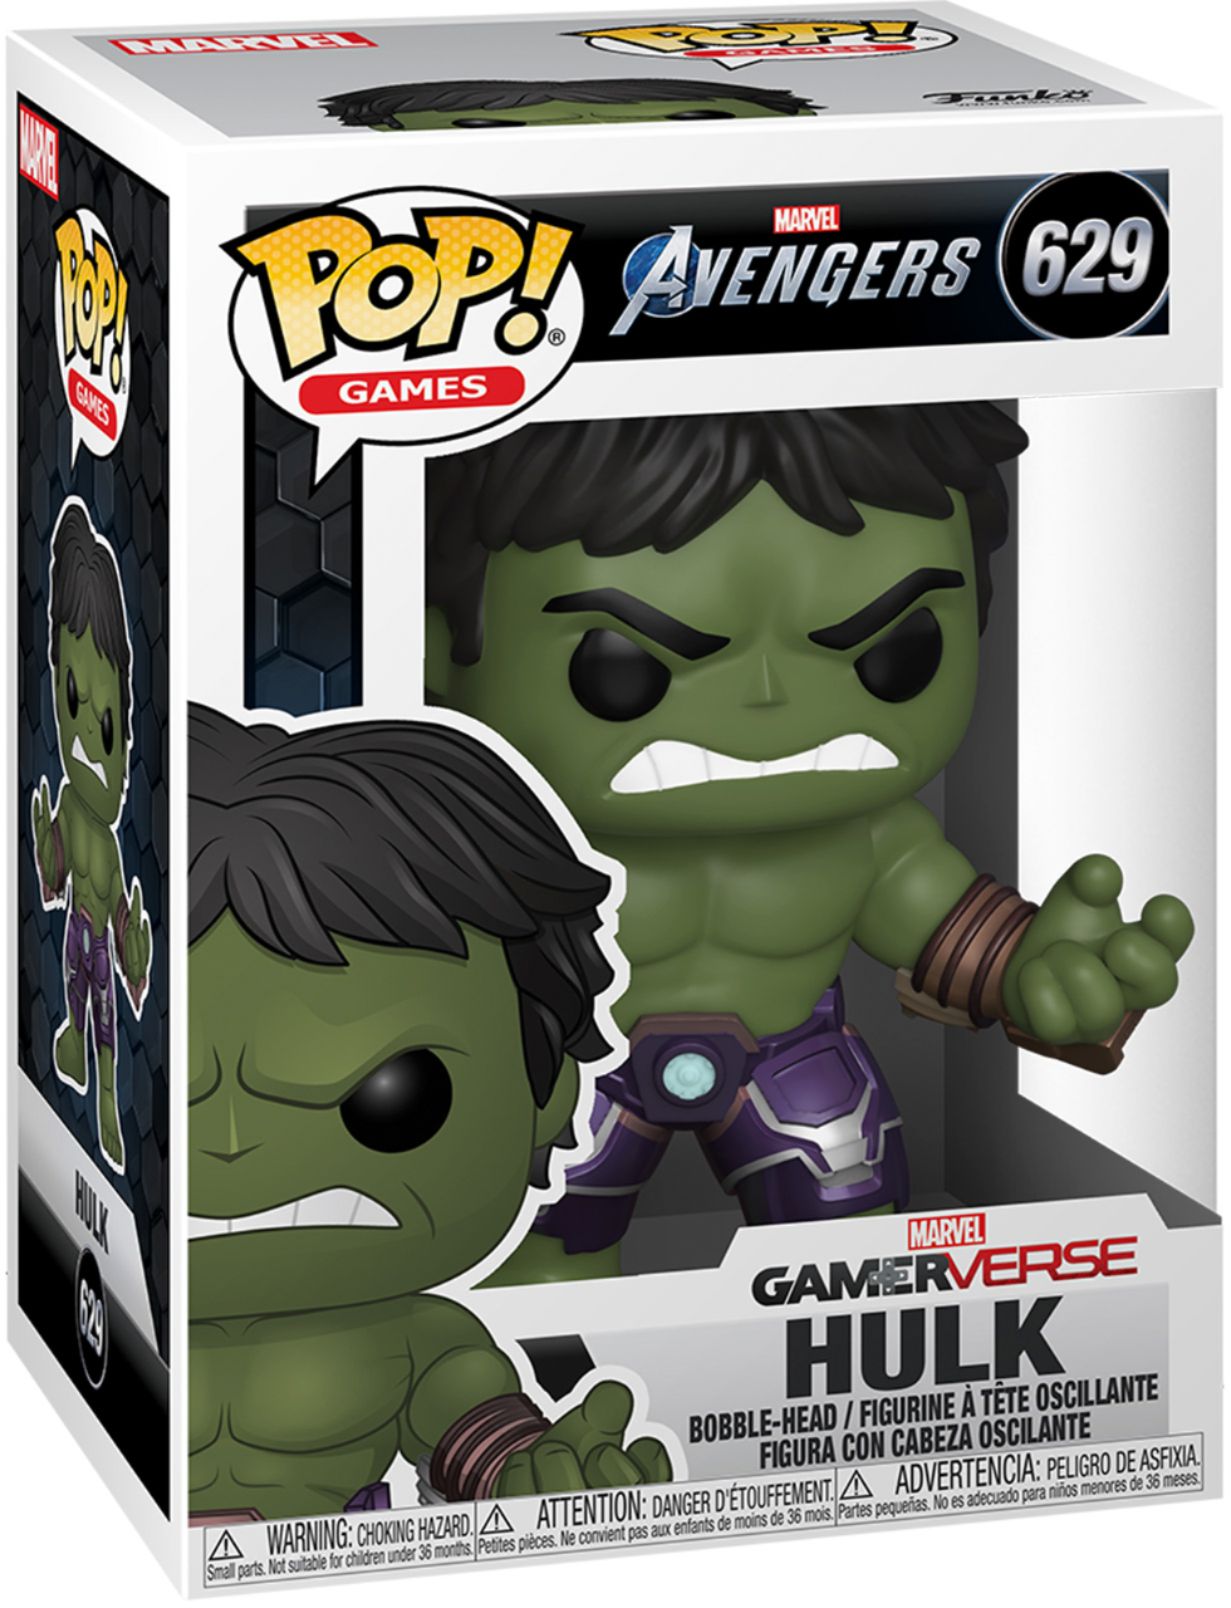 Hulk Bobble-Head #47759 Marvel Avengers Gamerverse Funko Pop Games